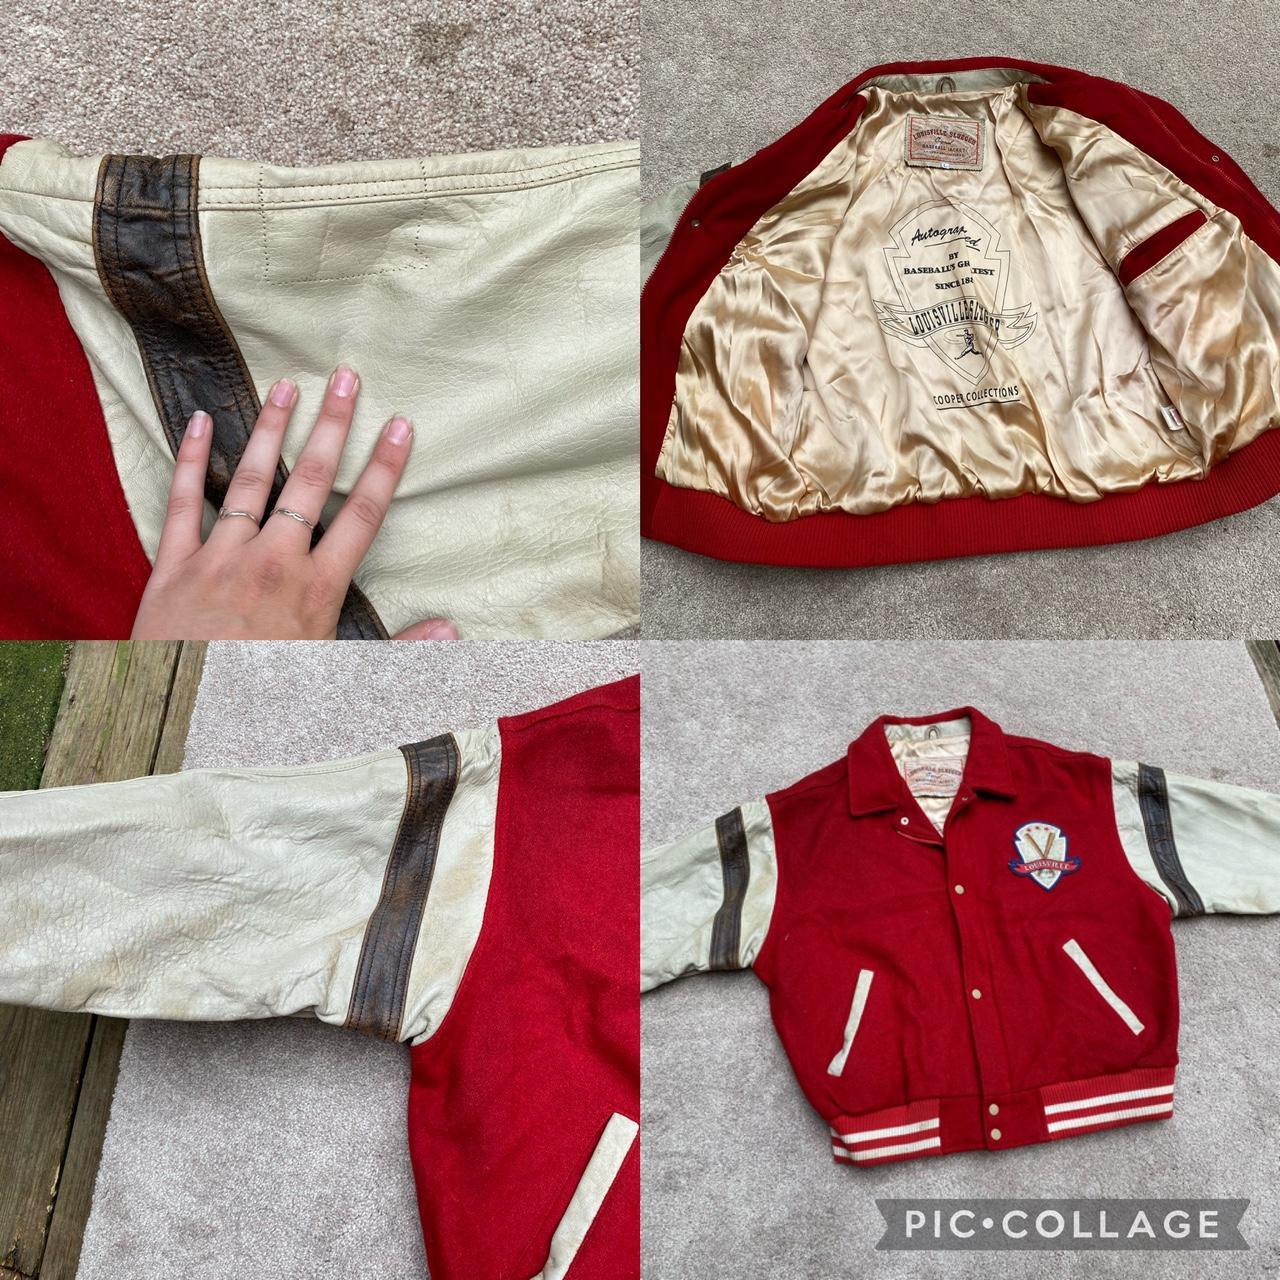 Louisville Cardinals Varsity Jacket